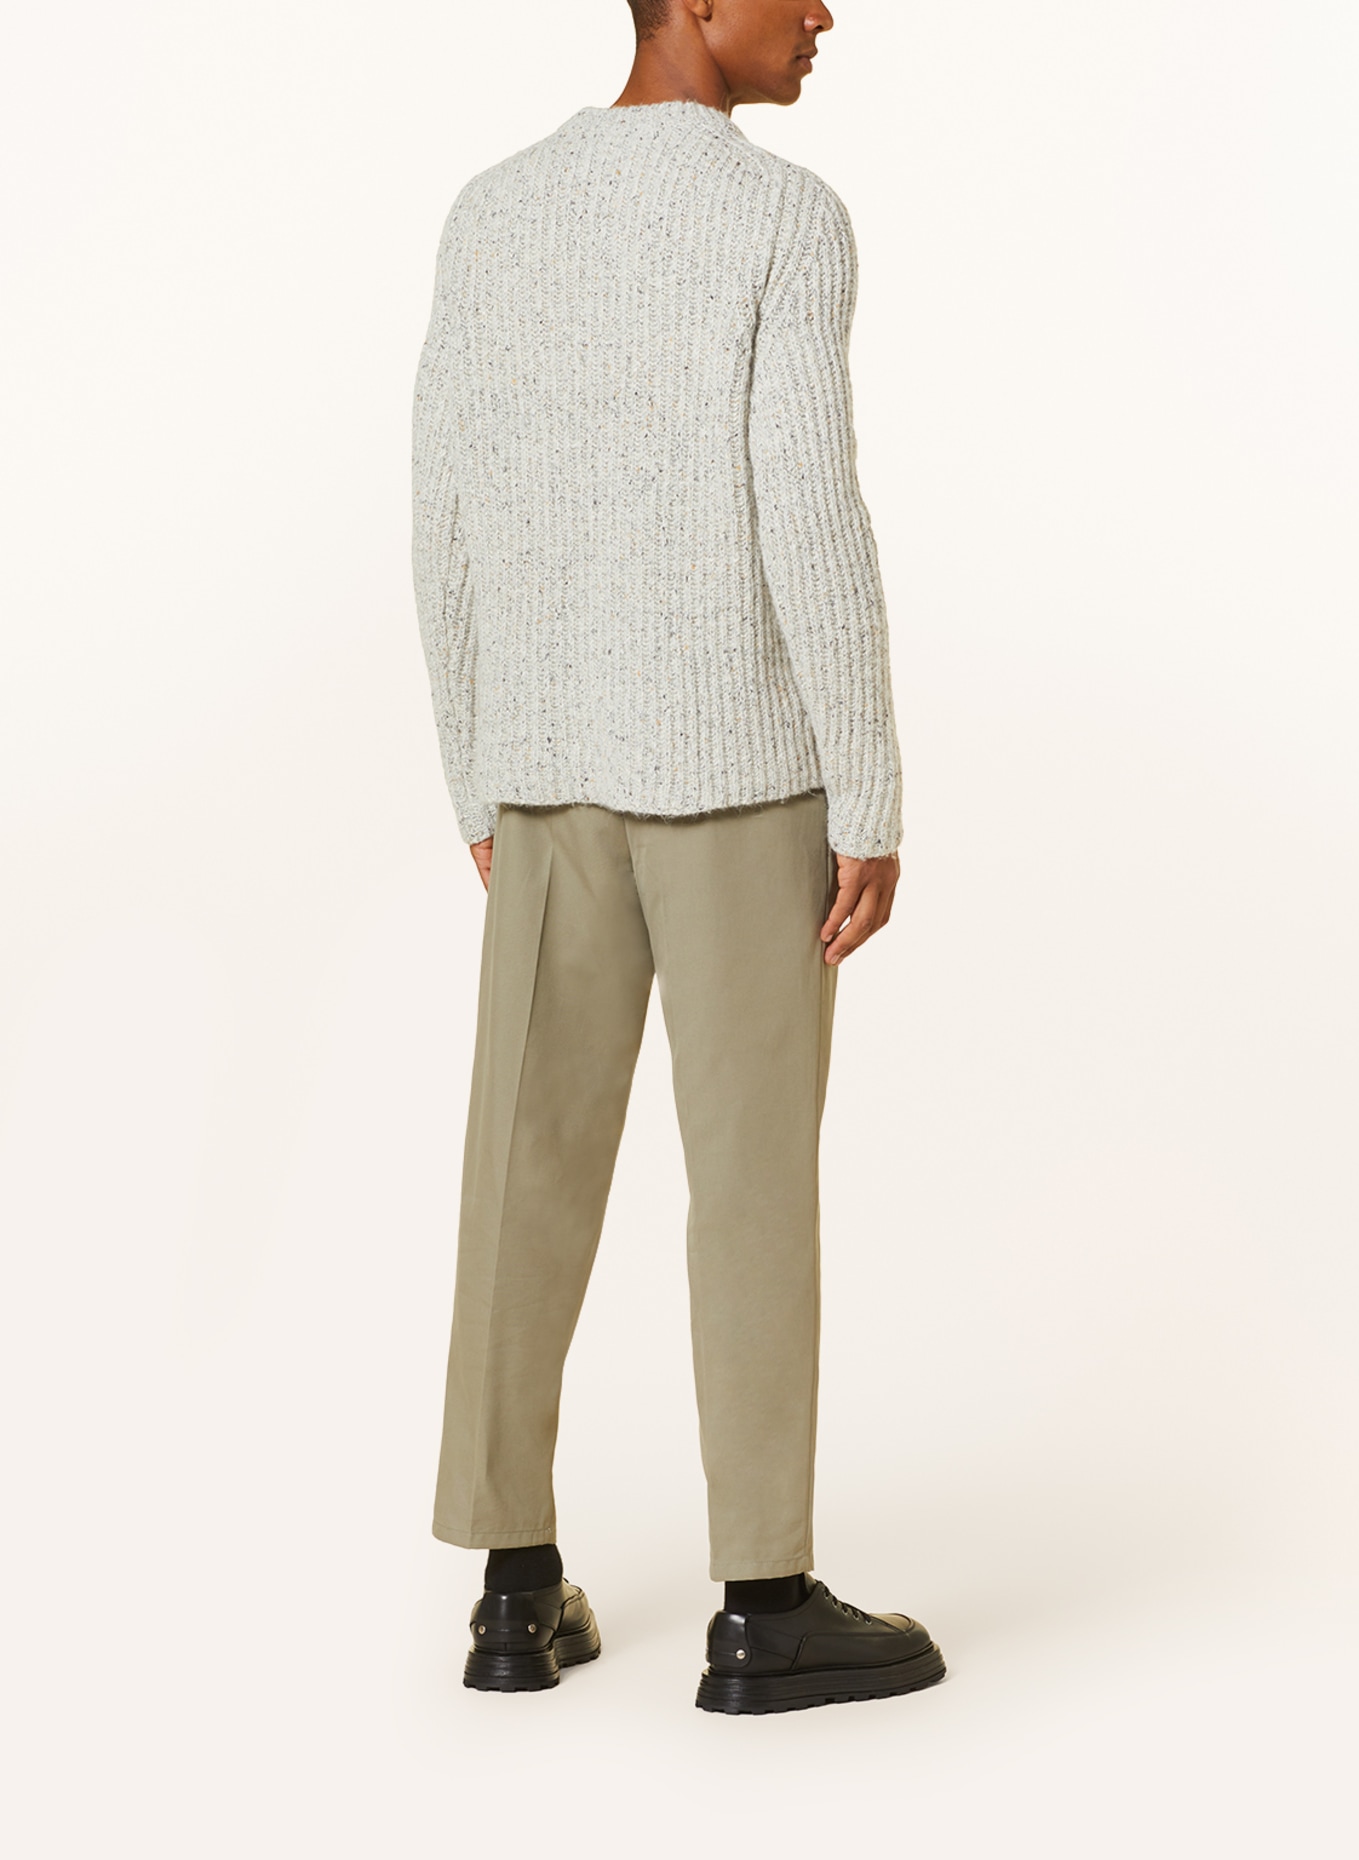 JIL SANDER Alpaca sweater, Color: BEIGE (Image 3)